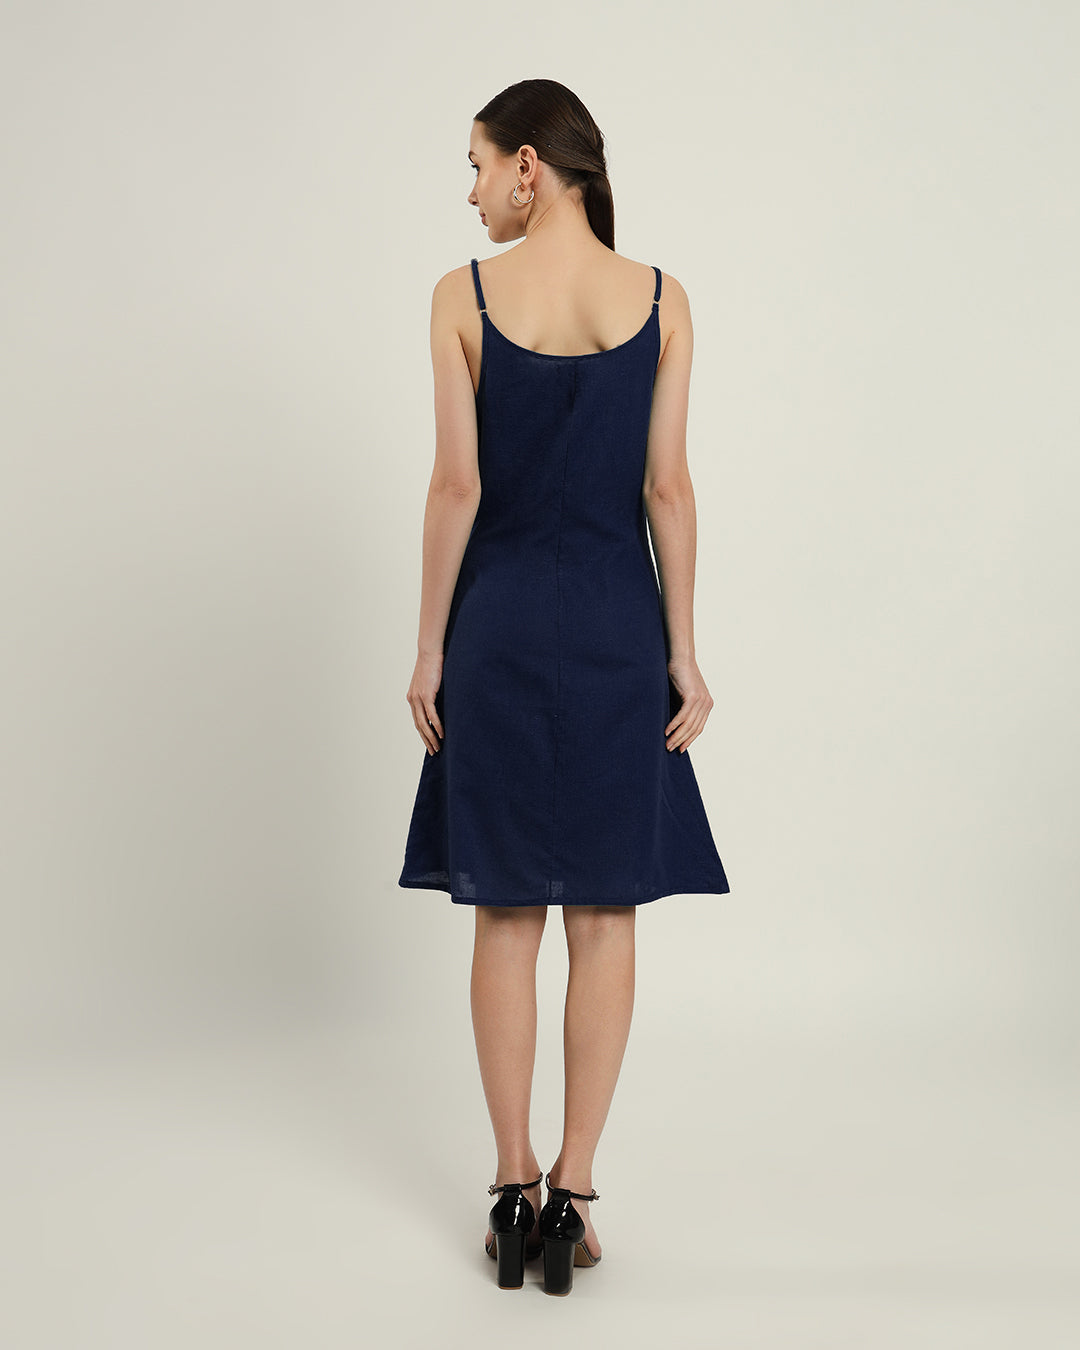 The Chambéry Daisy Midnight Blue Linen Dress